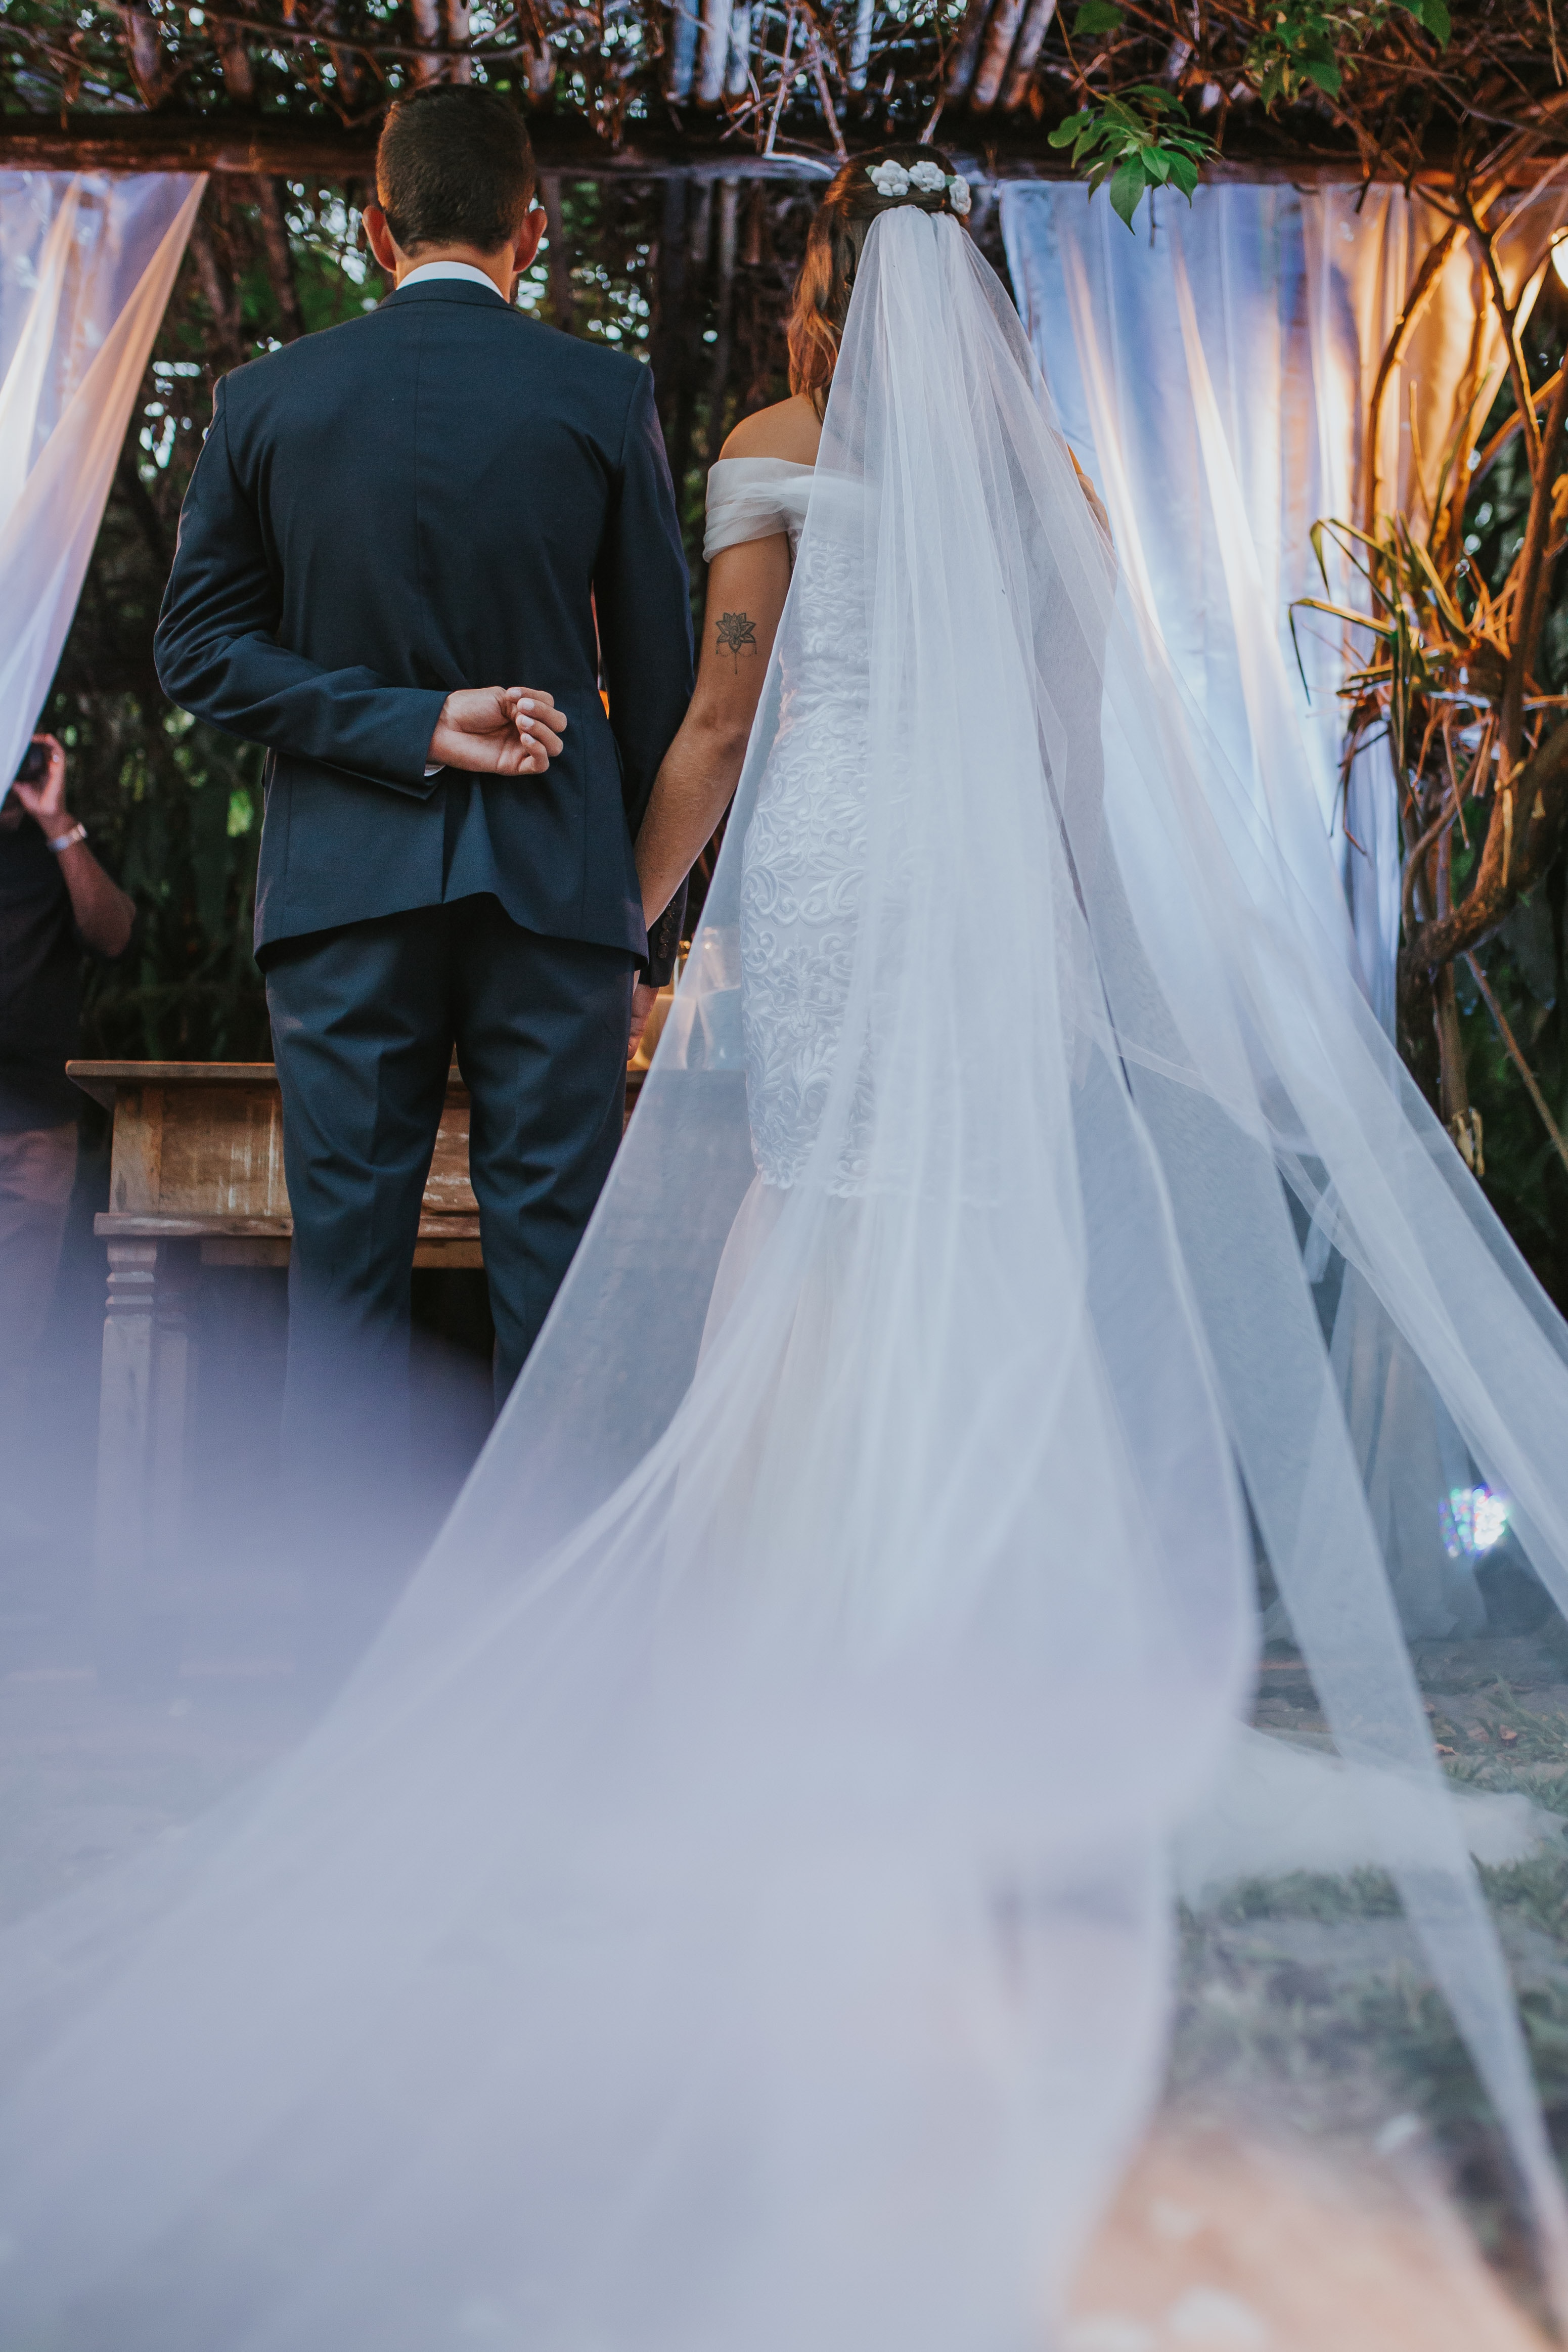 Eine Braut und ein Bräutigam gehen bei ihrer Hochzeit den Gang entlang.